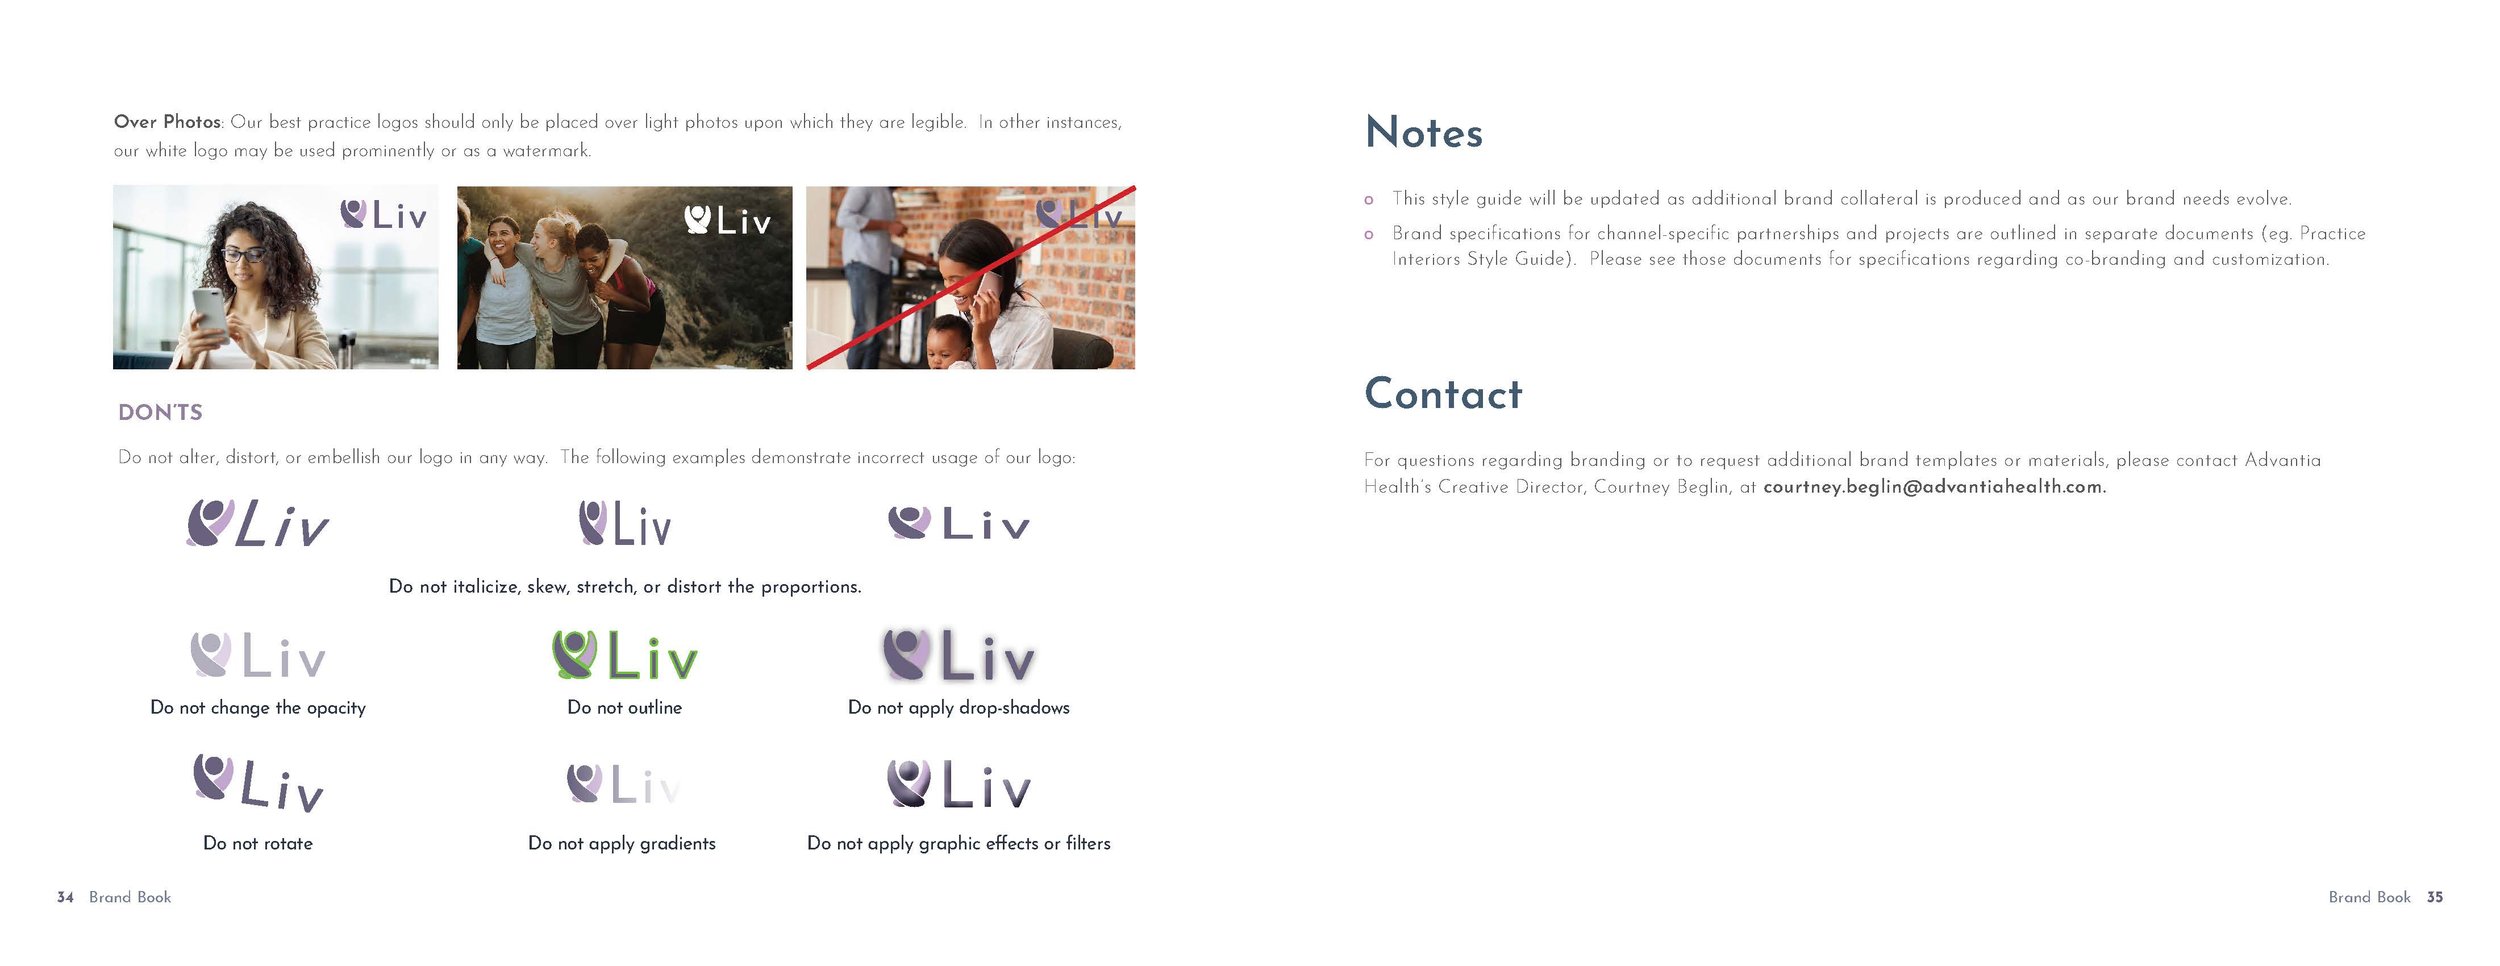 Brand Guide_Liv by Advantia Health_2021_Page_18.jpg